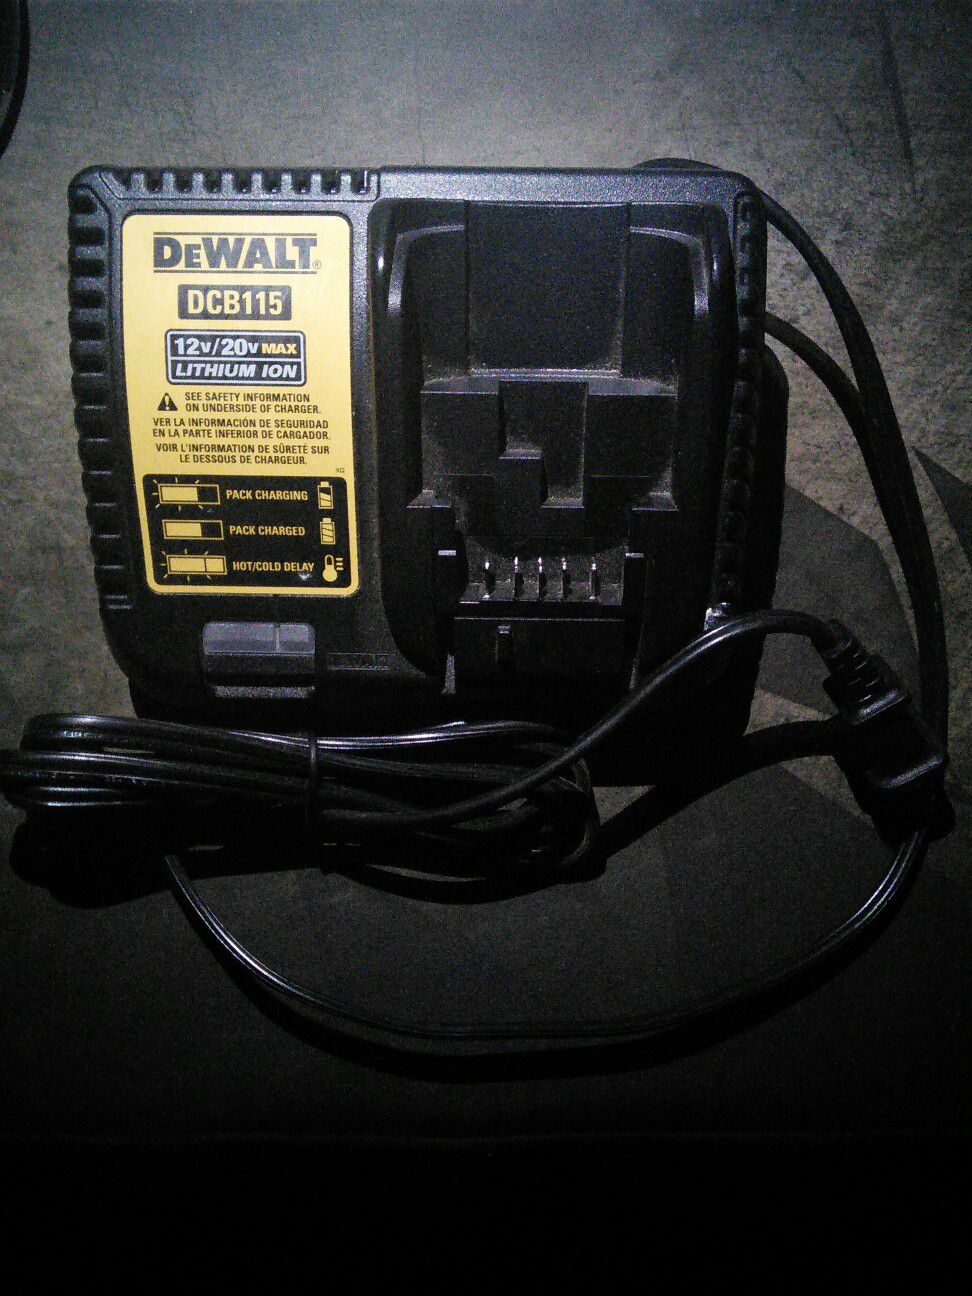 DeWalt 12v/20v charger